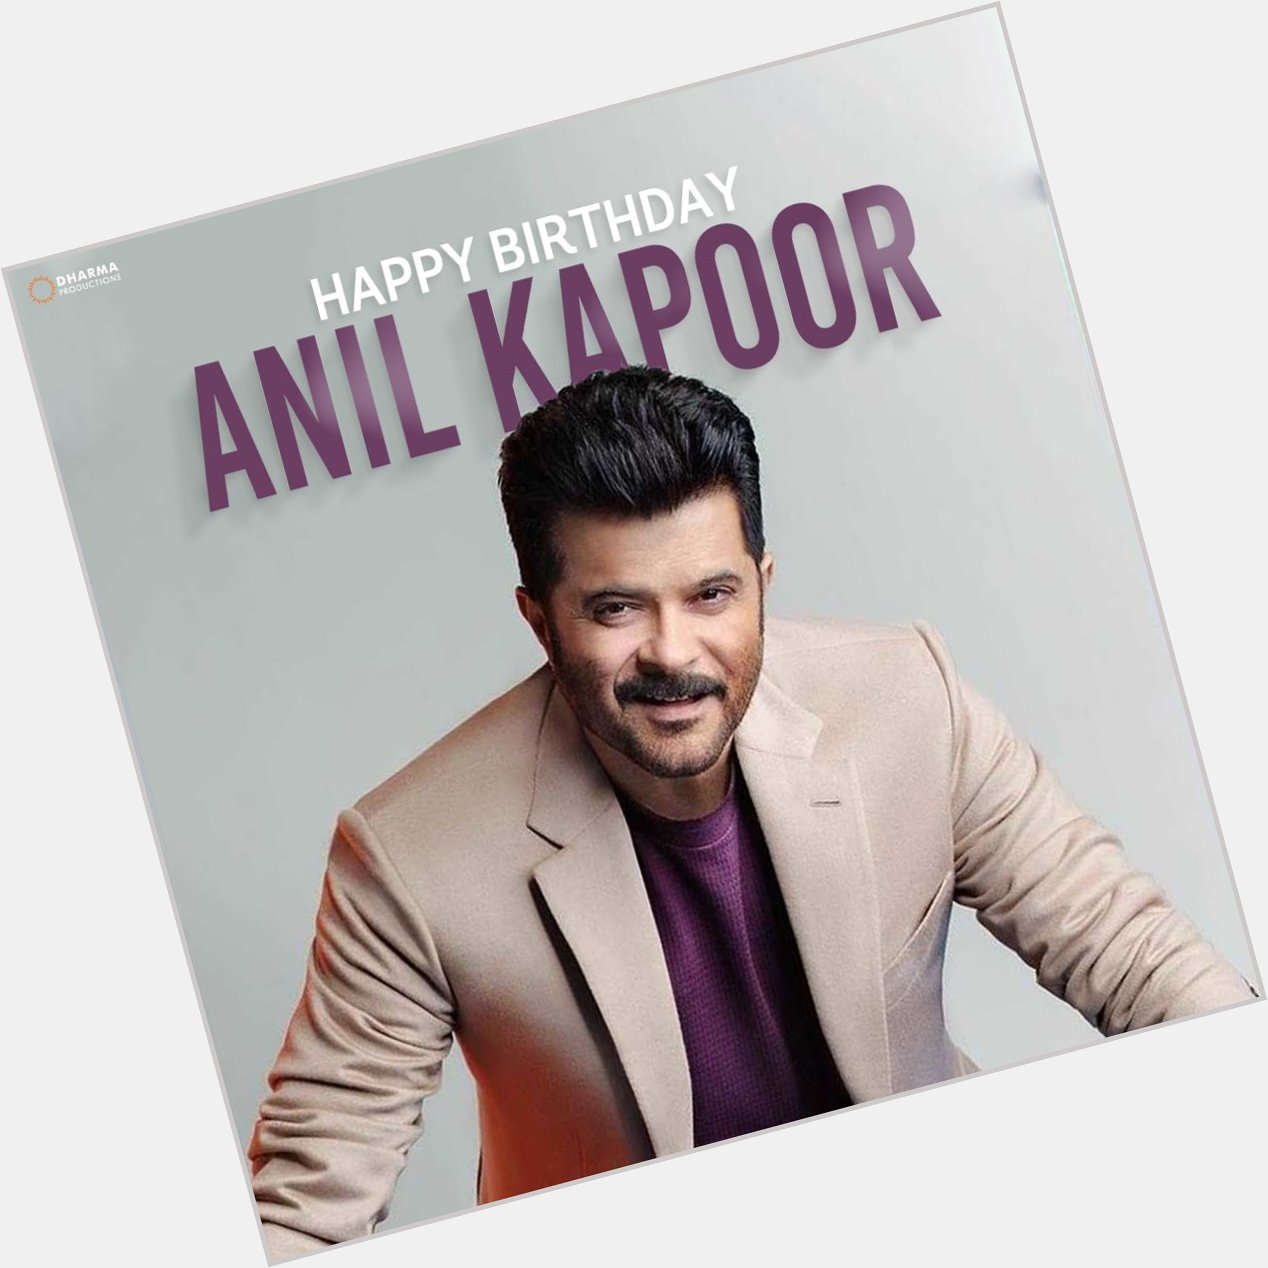 Happy birthday Anil Kapoor sir 